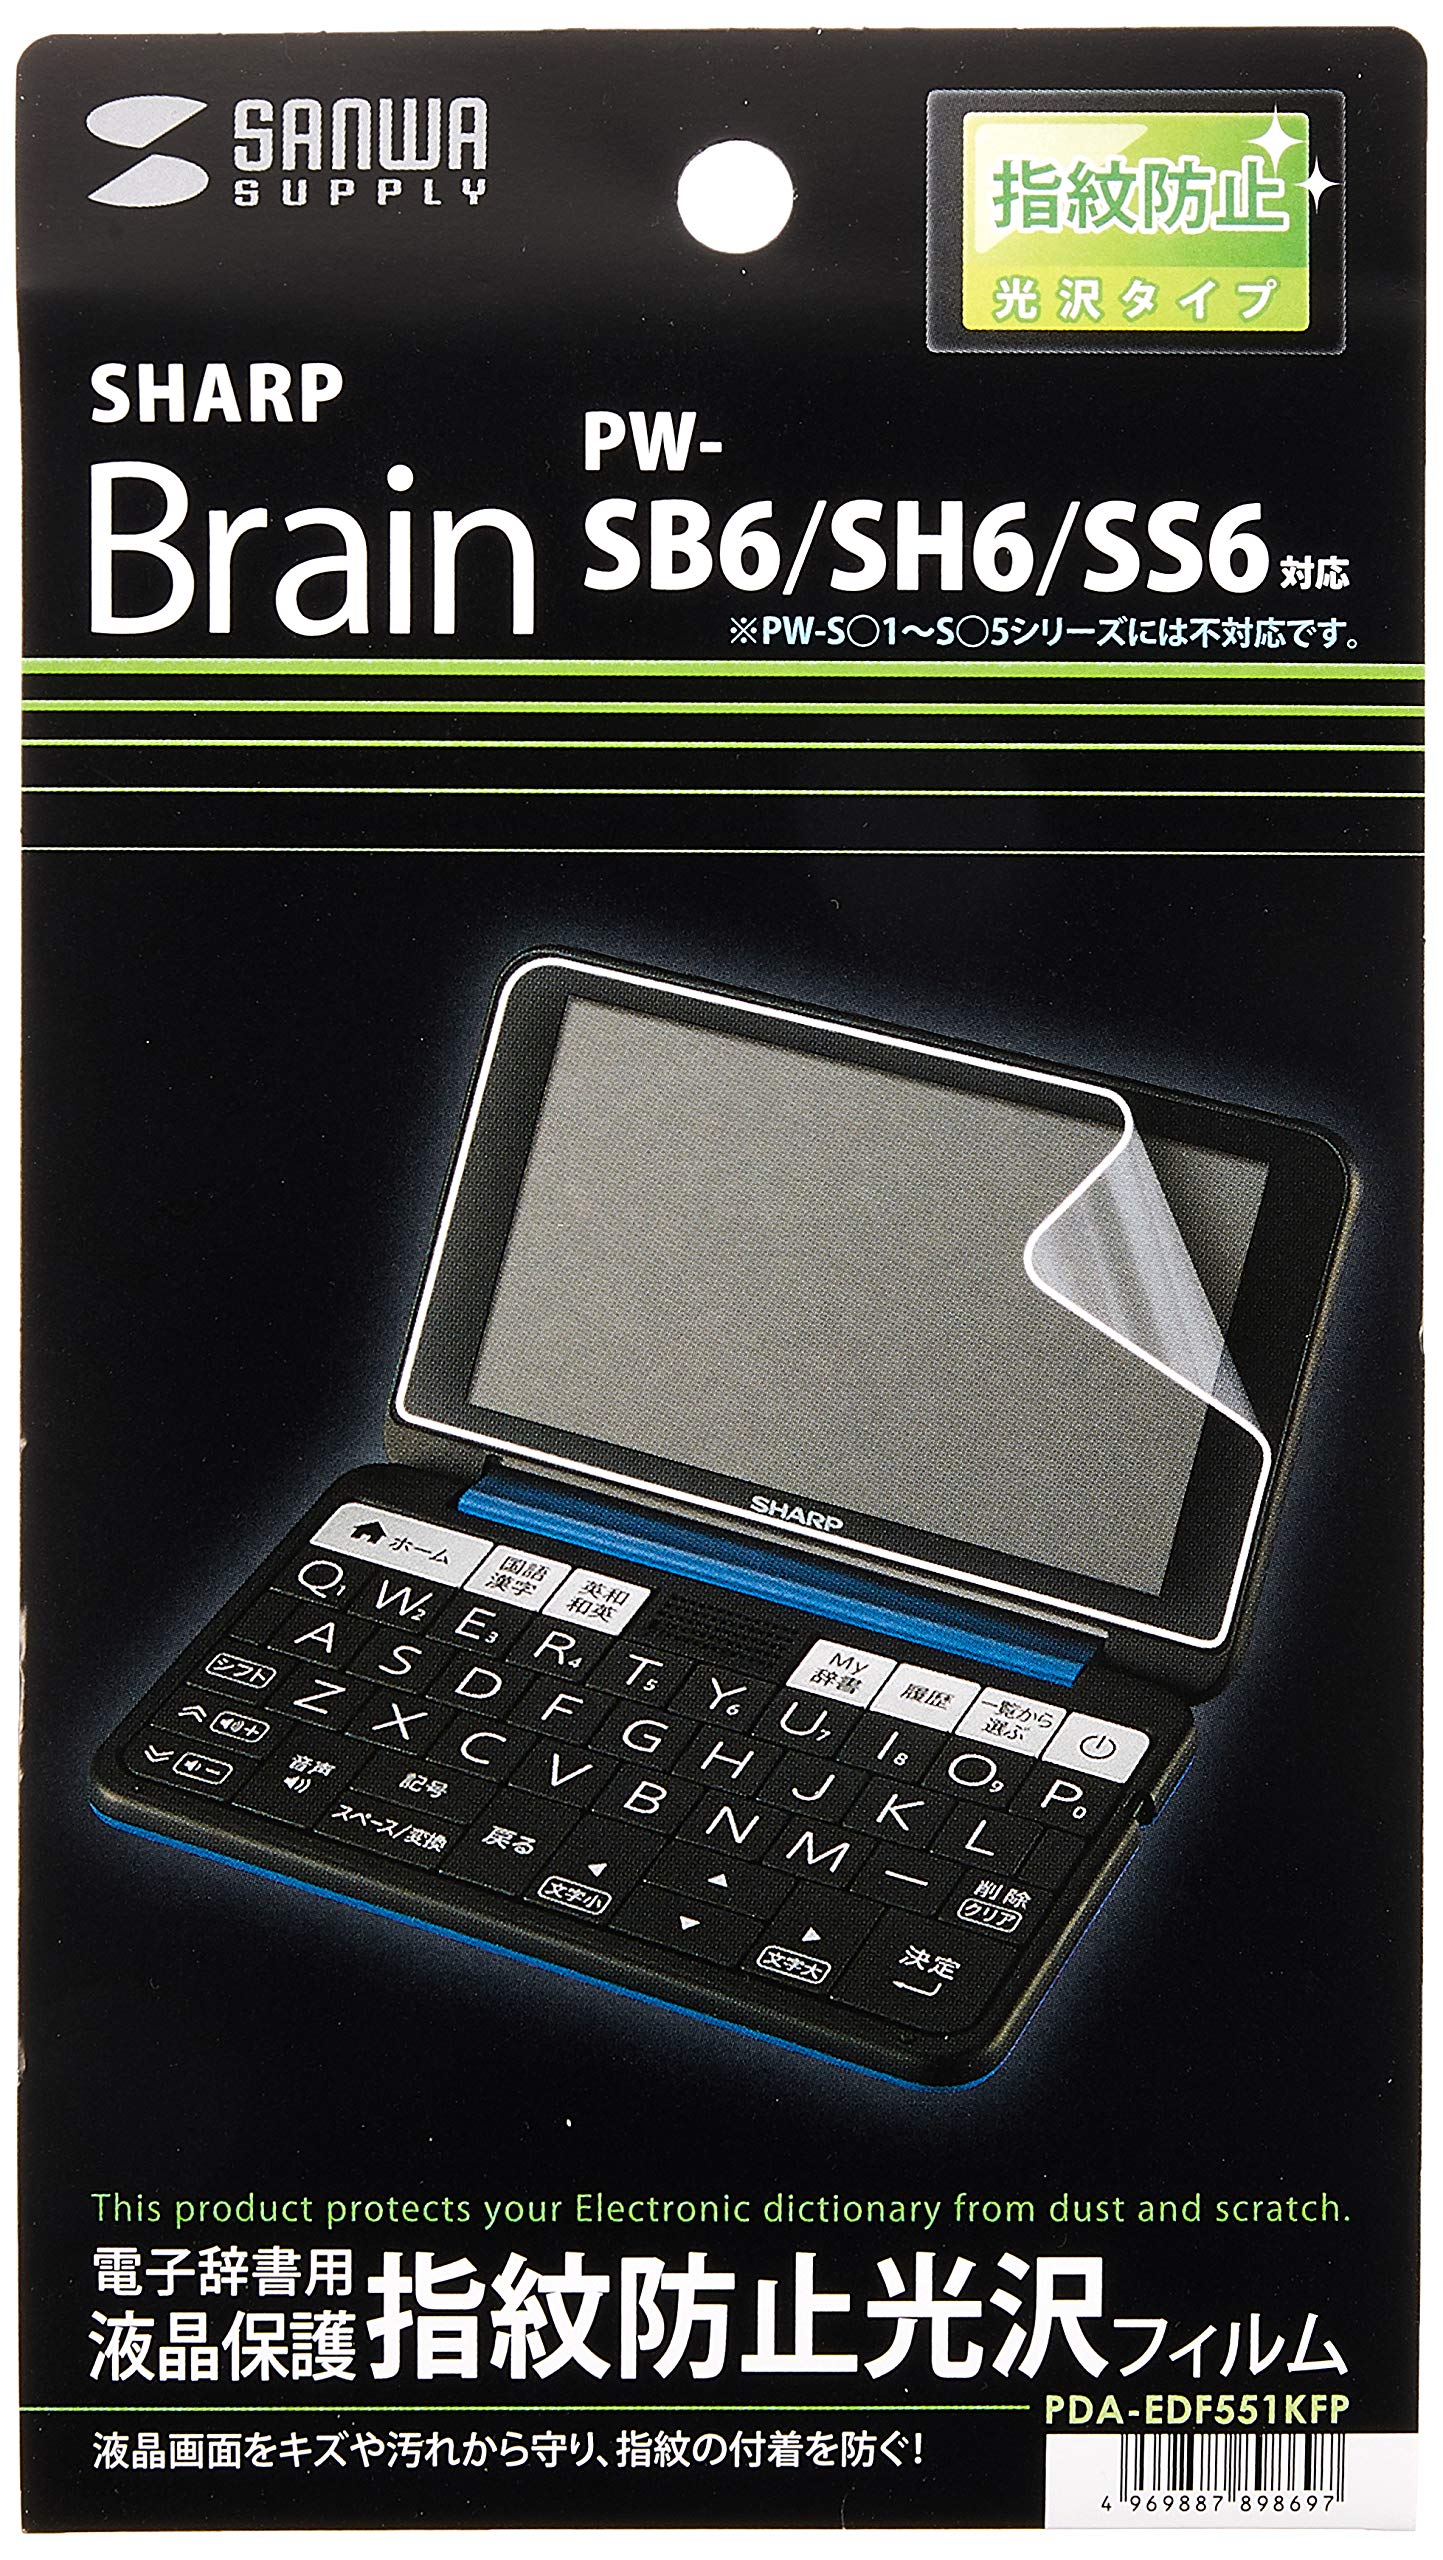 サンワサプライ SHARP Brain PW-SB6/SH6/SS6